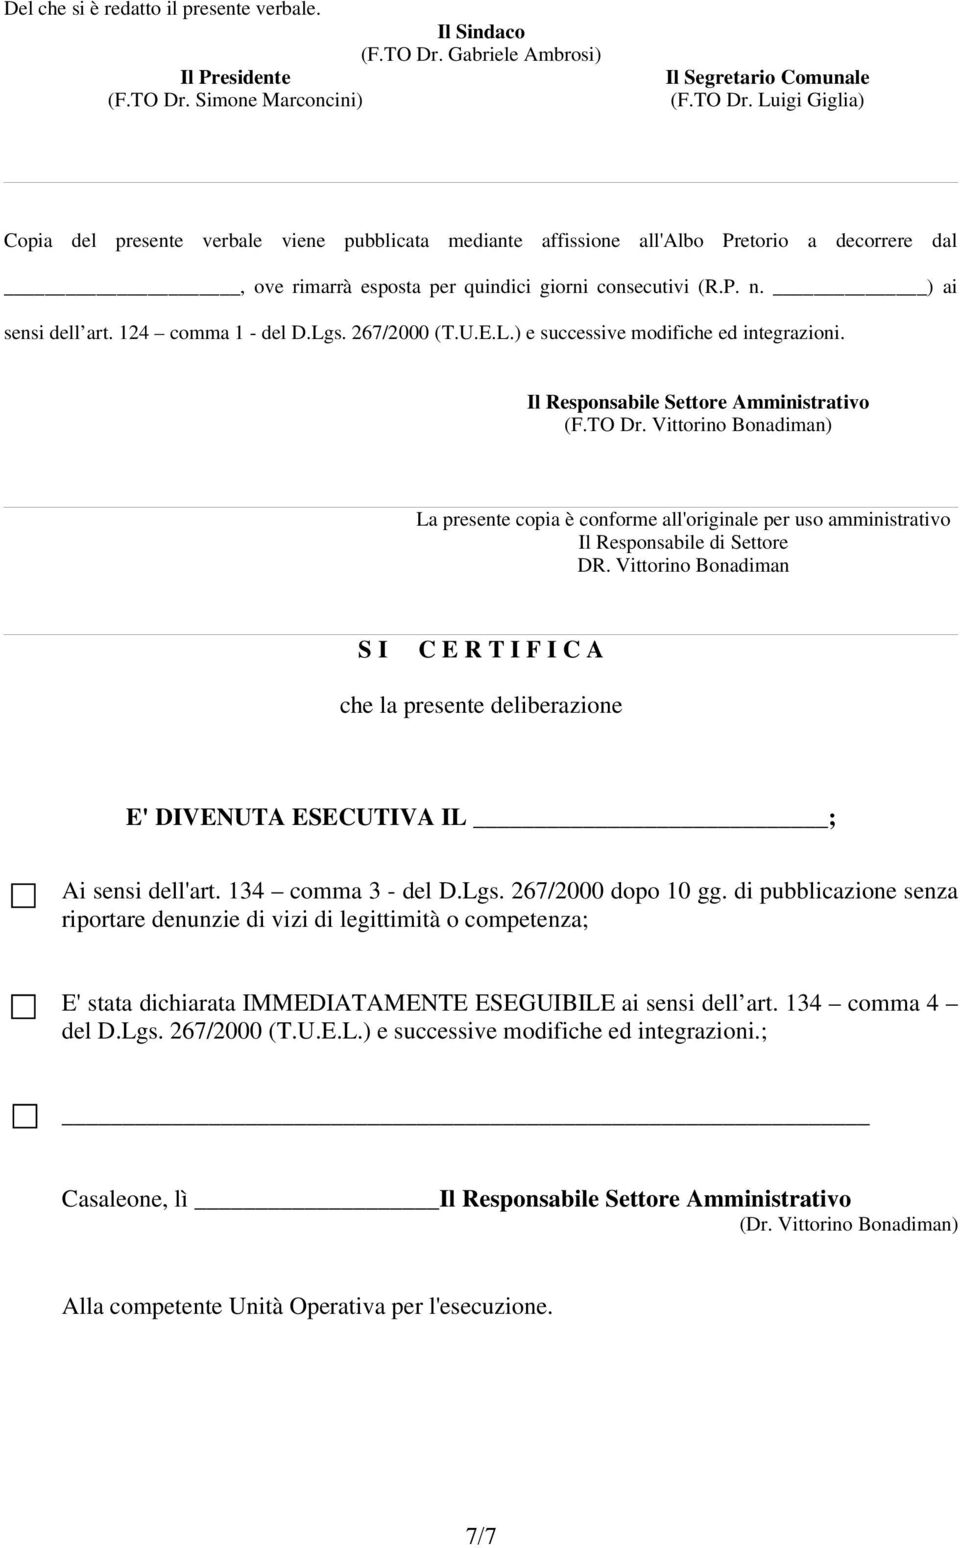 Simone Marconcini) (F.TO Dr. Luigi Giglia) Copia del presente verbale viene pubblicata mediante affissione all'albo Pretorio a decorrere dal, ove rimarrà esposta per quindici giorni consecutivi (R.P. n.